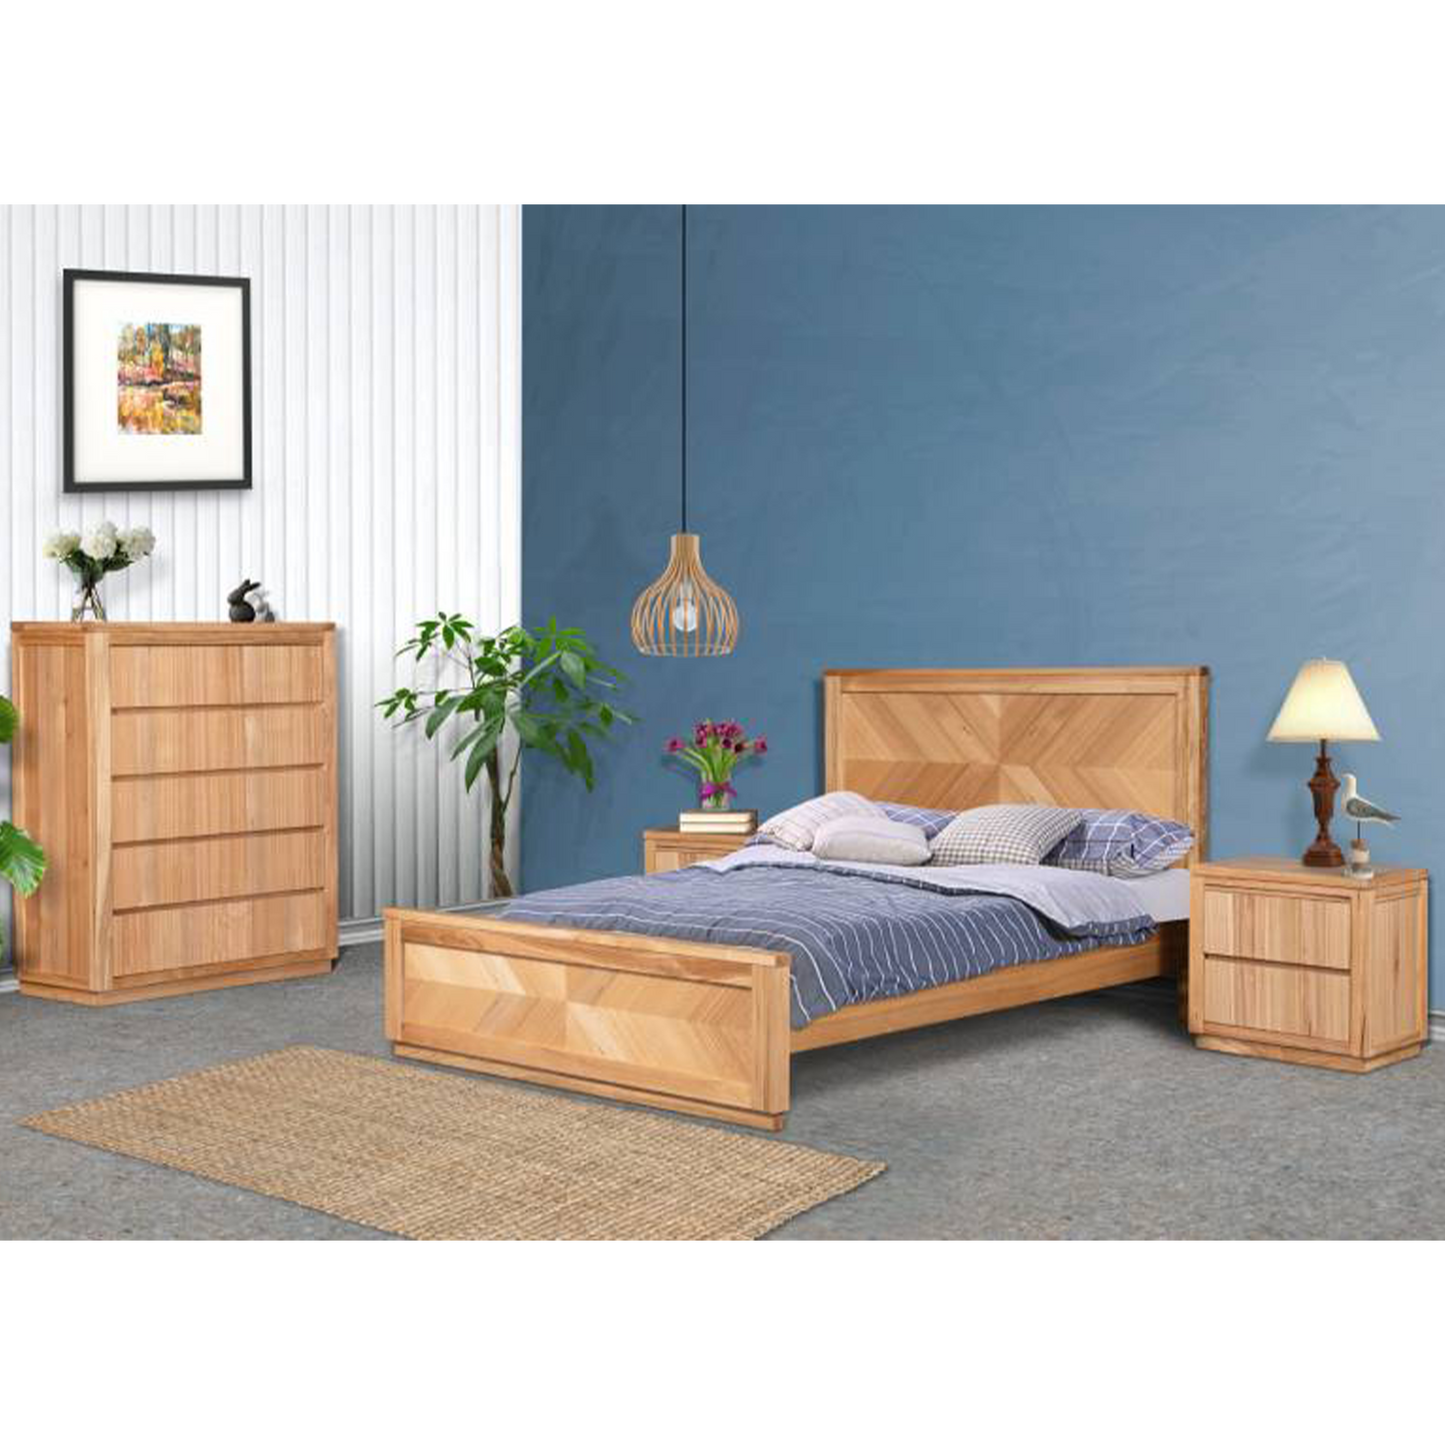 Hilara Timber Bed